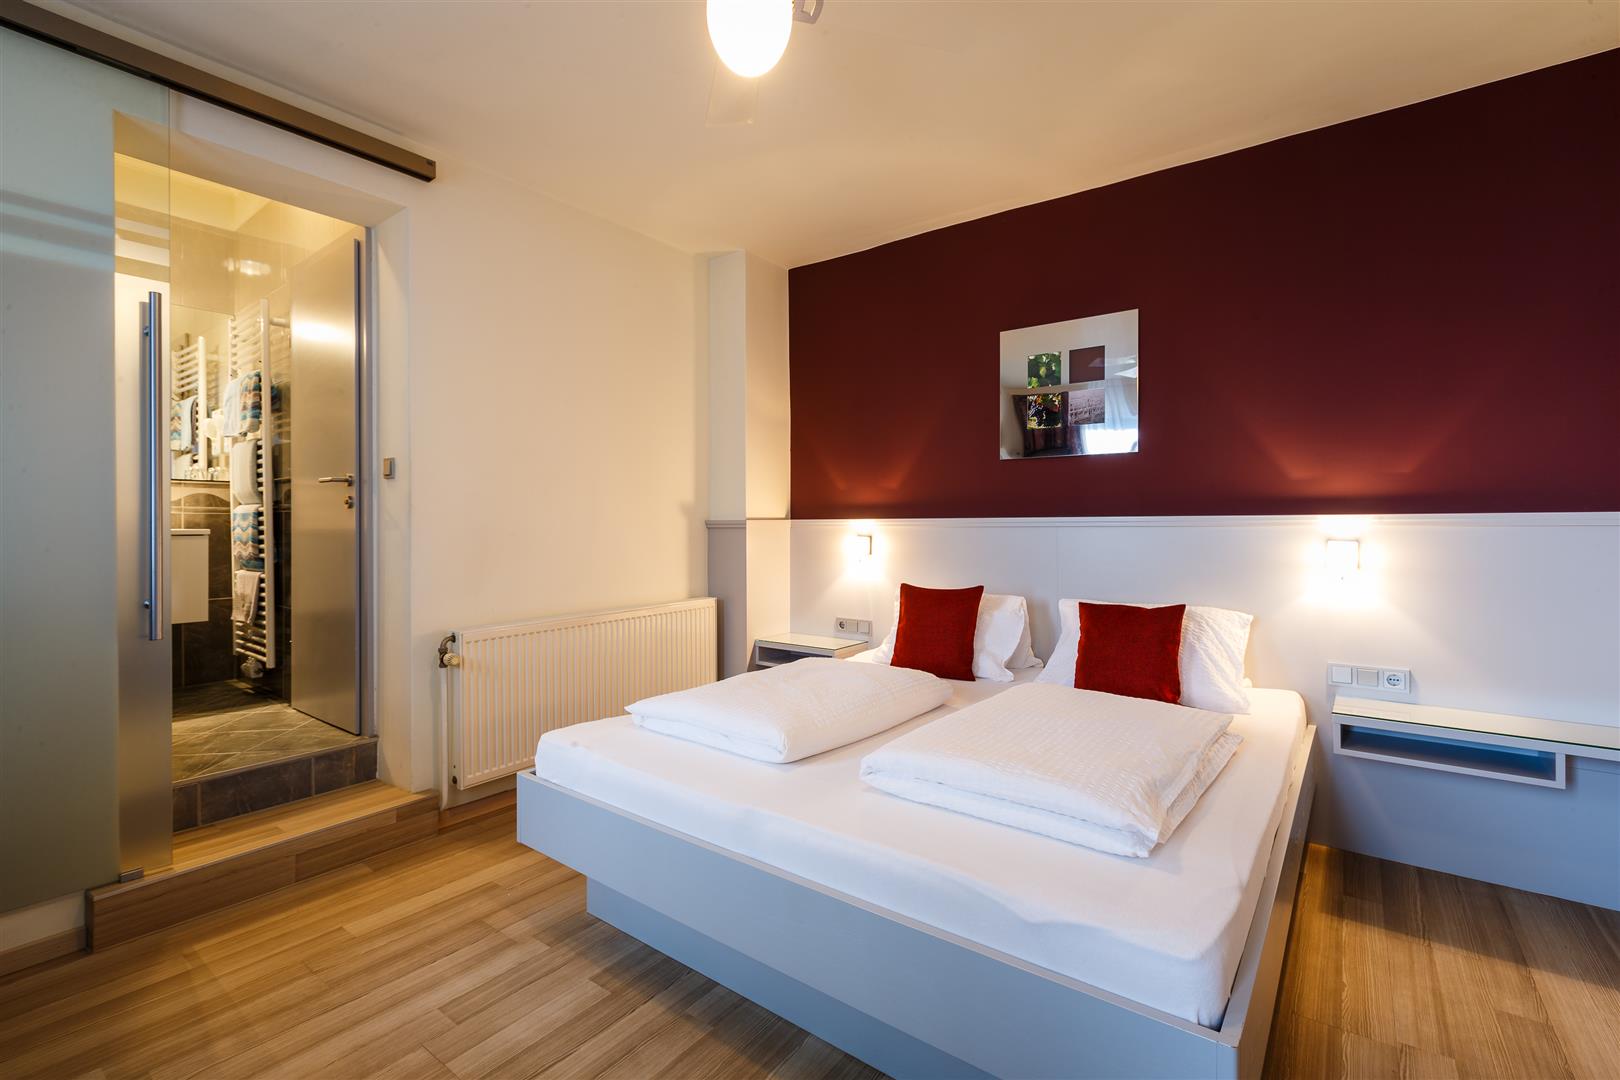 Modern eingerichtetes Gästezimmer mit weißem Bett und roten Akzentkissen, offener Badezimmertür im Hintergrund.